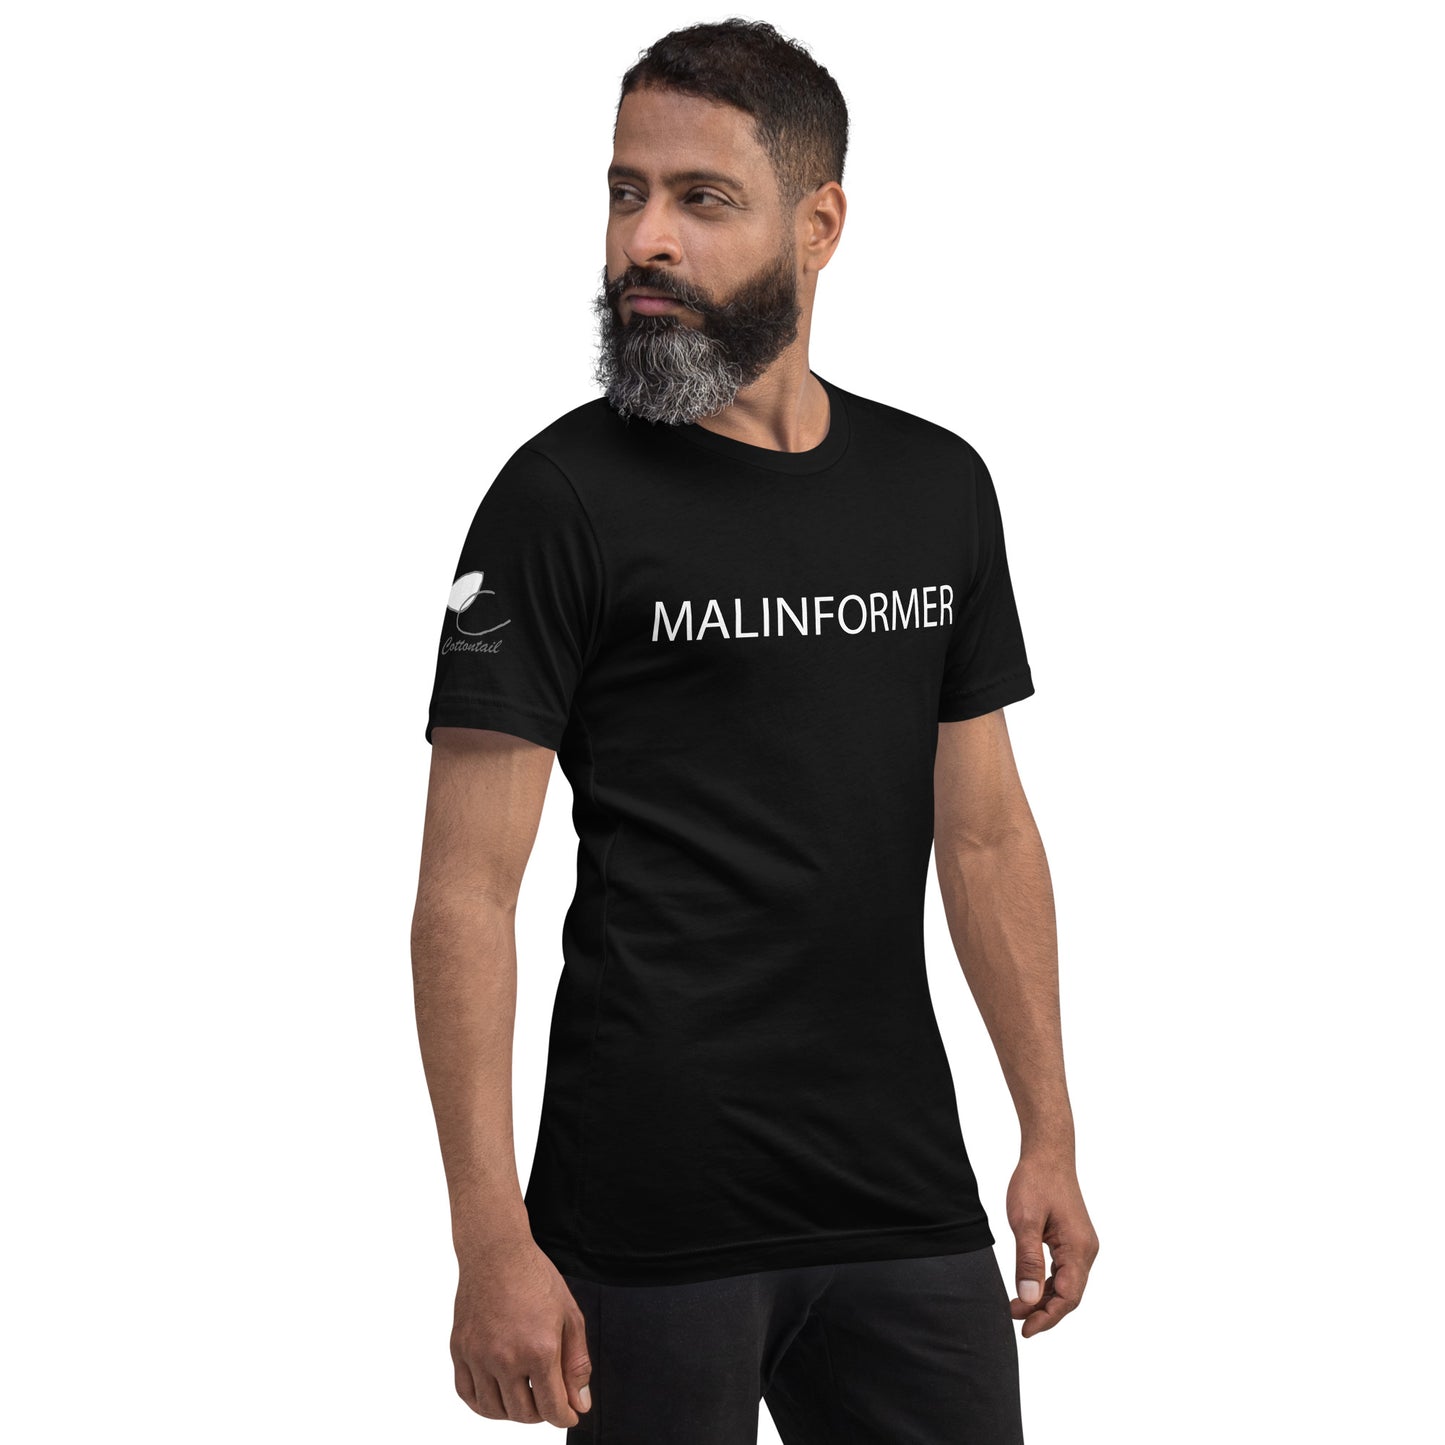 Malinformer, Unisex t-shirt